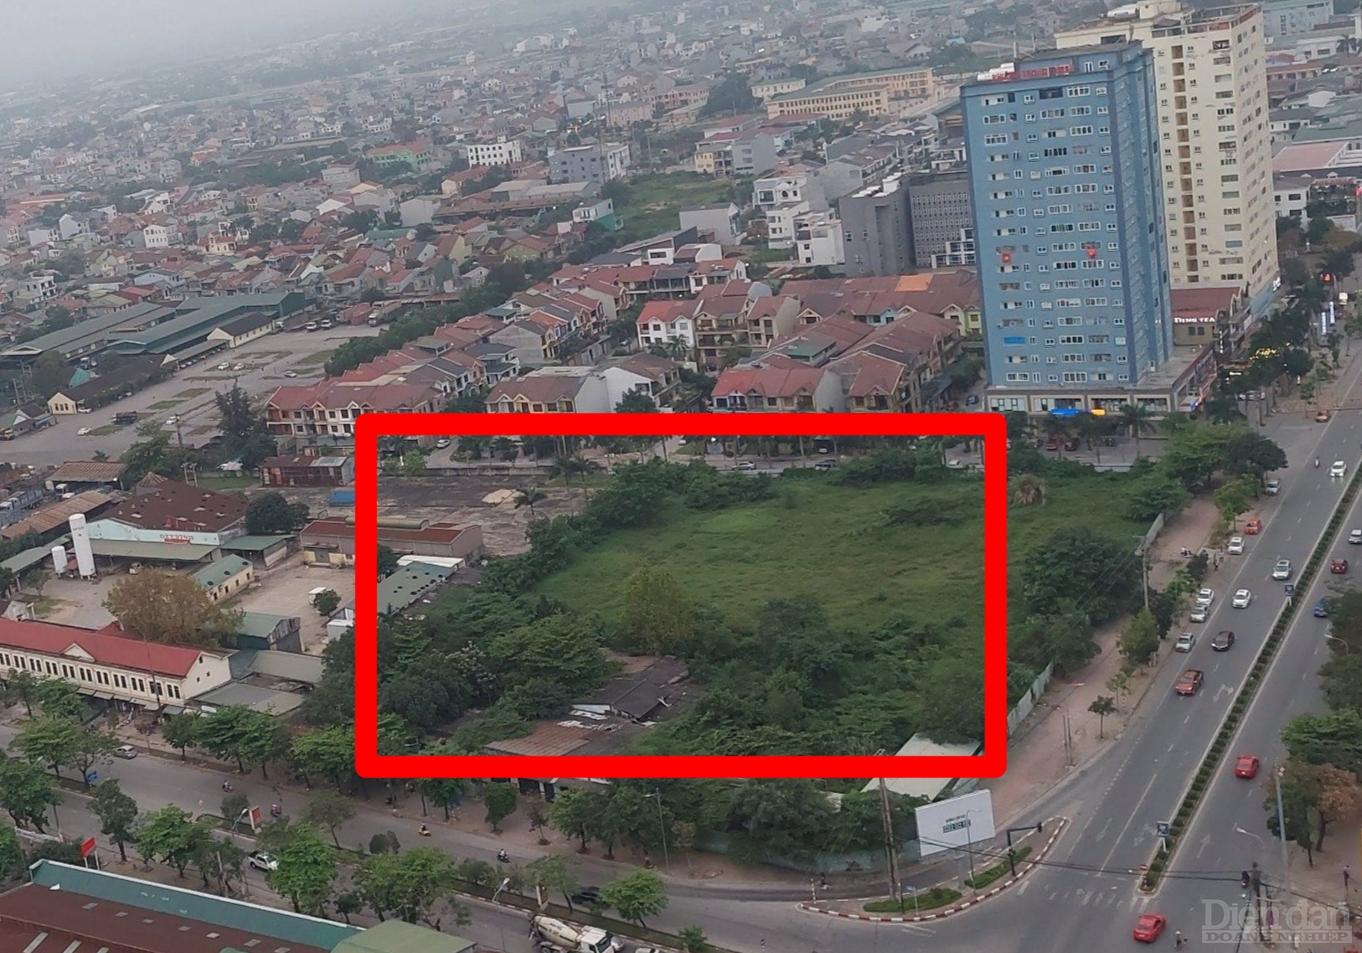 Khu đất vàng” bị bỏ hoang của dự án Trung tâm thương mại, văn phòng cho thuê và căn hộ cao cấp BMC ở phường Quán Bàu, TP Vinh, tỉnh Nghệ An